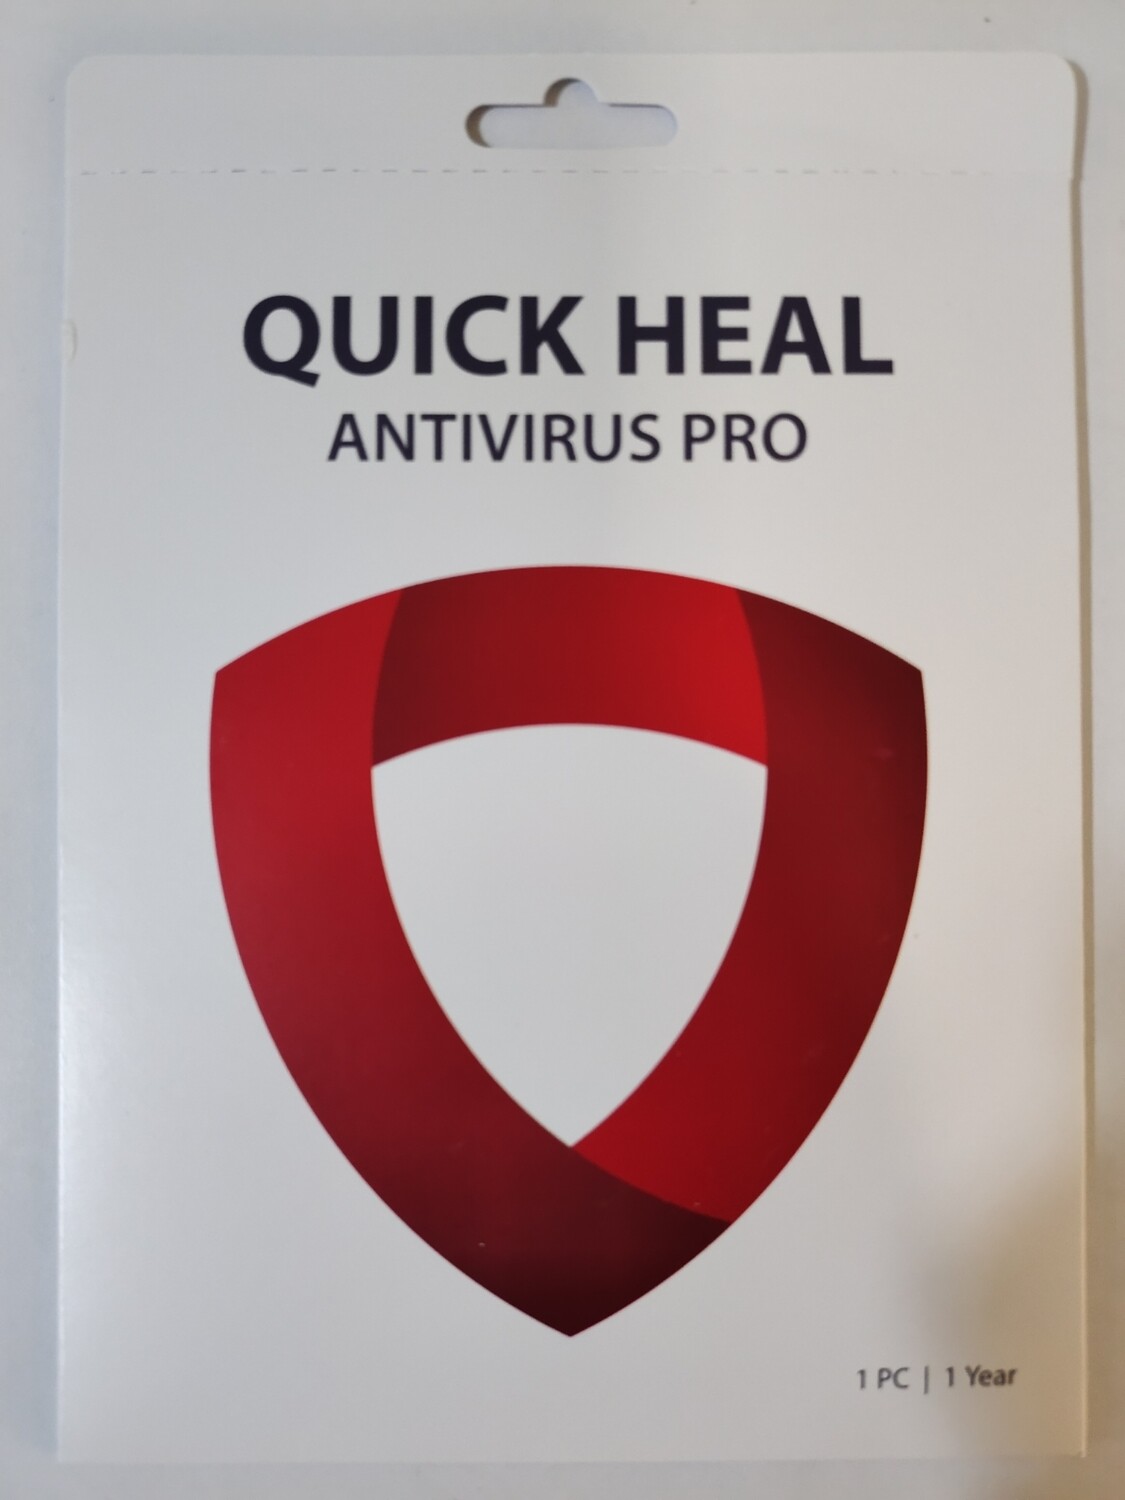 New, 1 User, 1 Year, Quick Heal Antivirus Pro